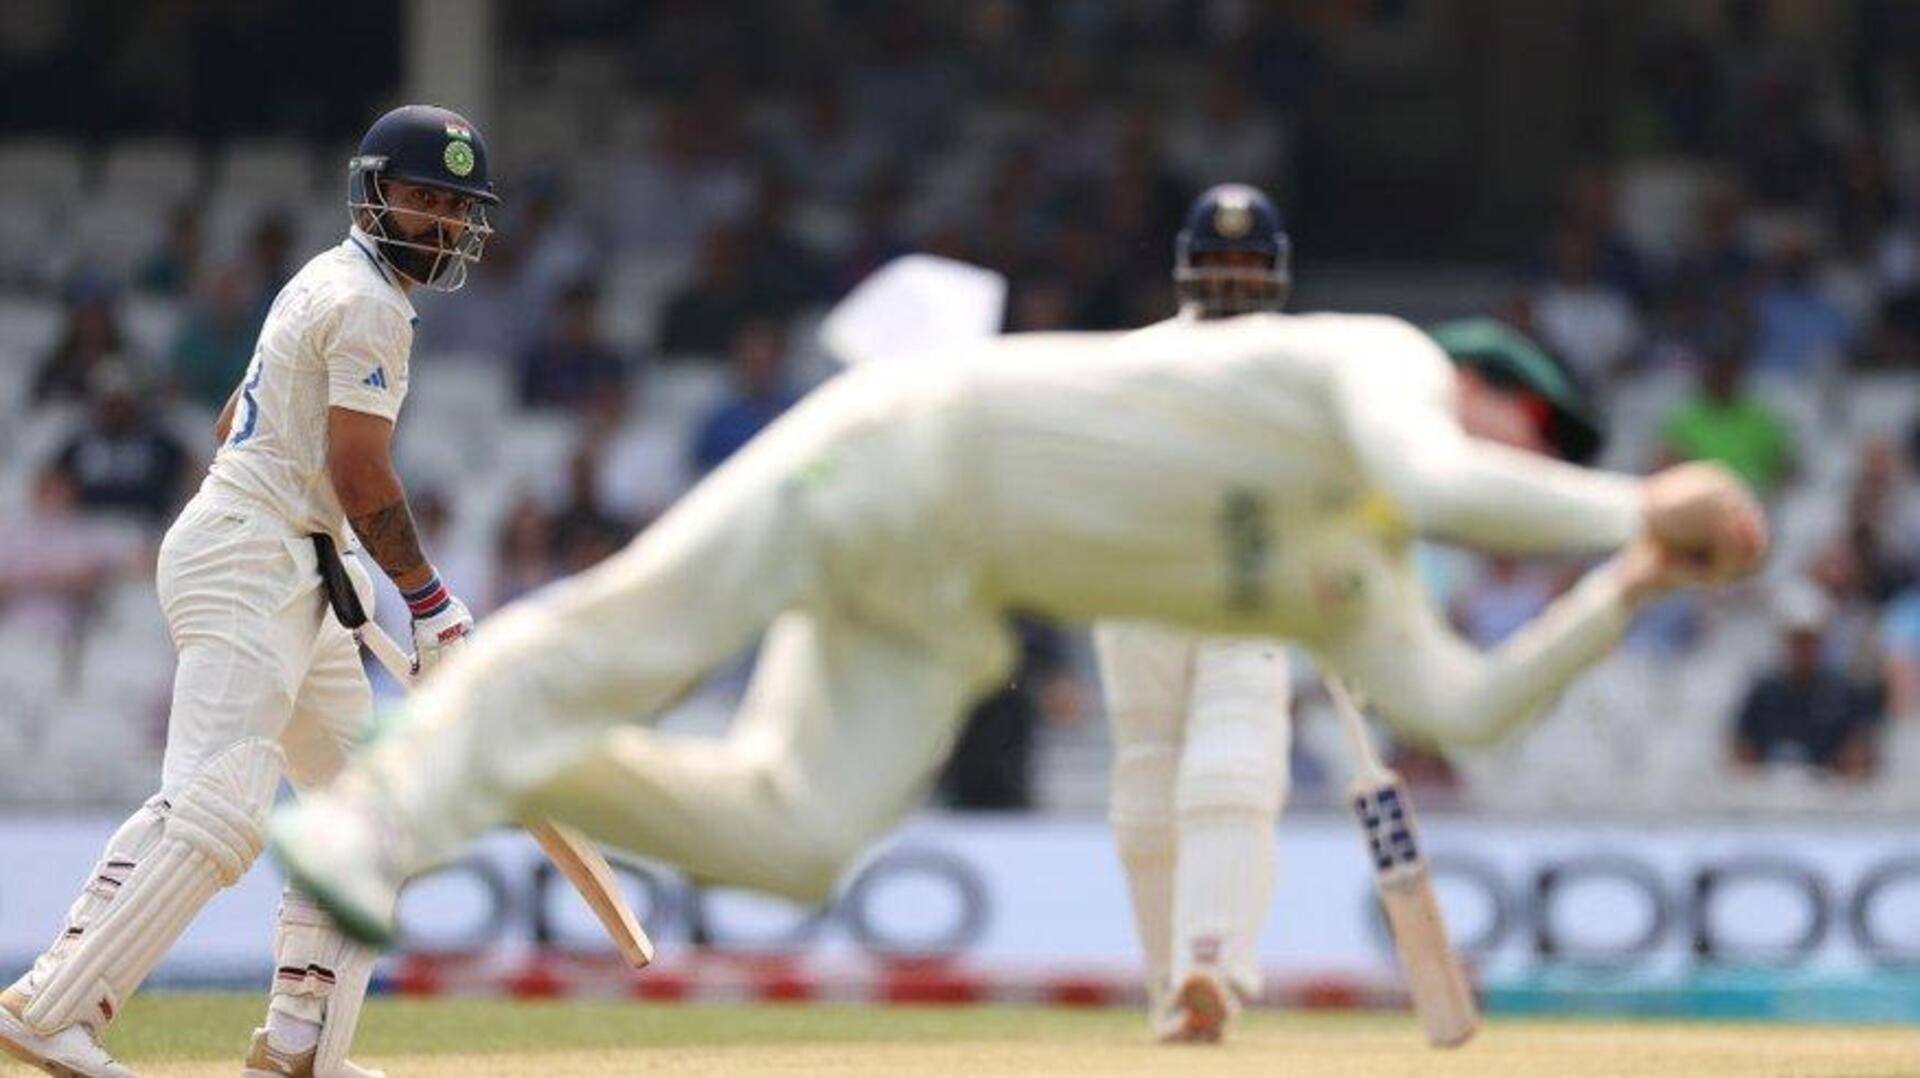 टेस्ट क्रिकेट में तीसरे सबसे ज्यादा कैच लेने वाले ऑस्ट्रेलिया फील्डर बने स्टीव स्मिथ, जानिए आंकड़े